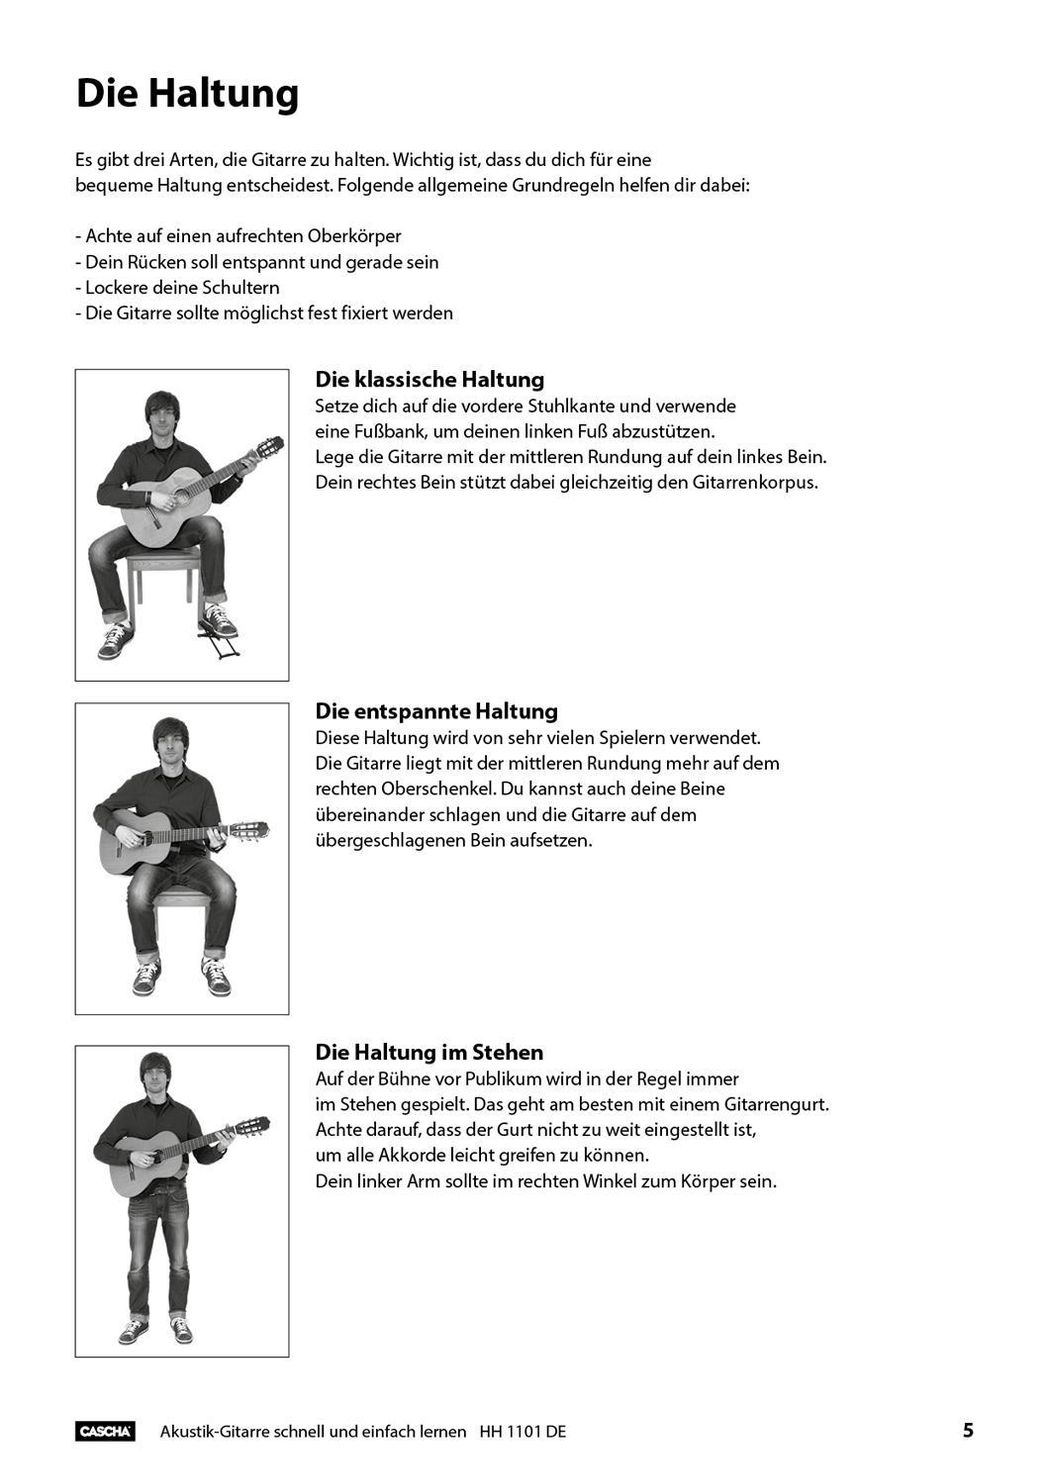 Akustik-Gitarre - Schnell und einfach lernen Buch versandkostenfrei